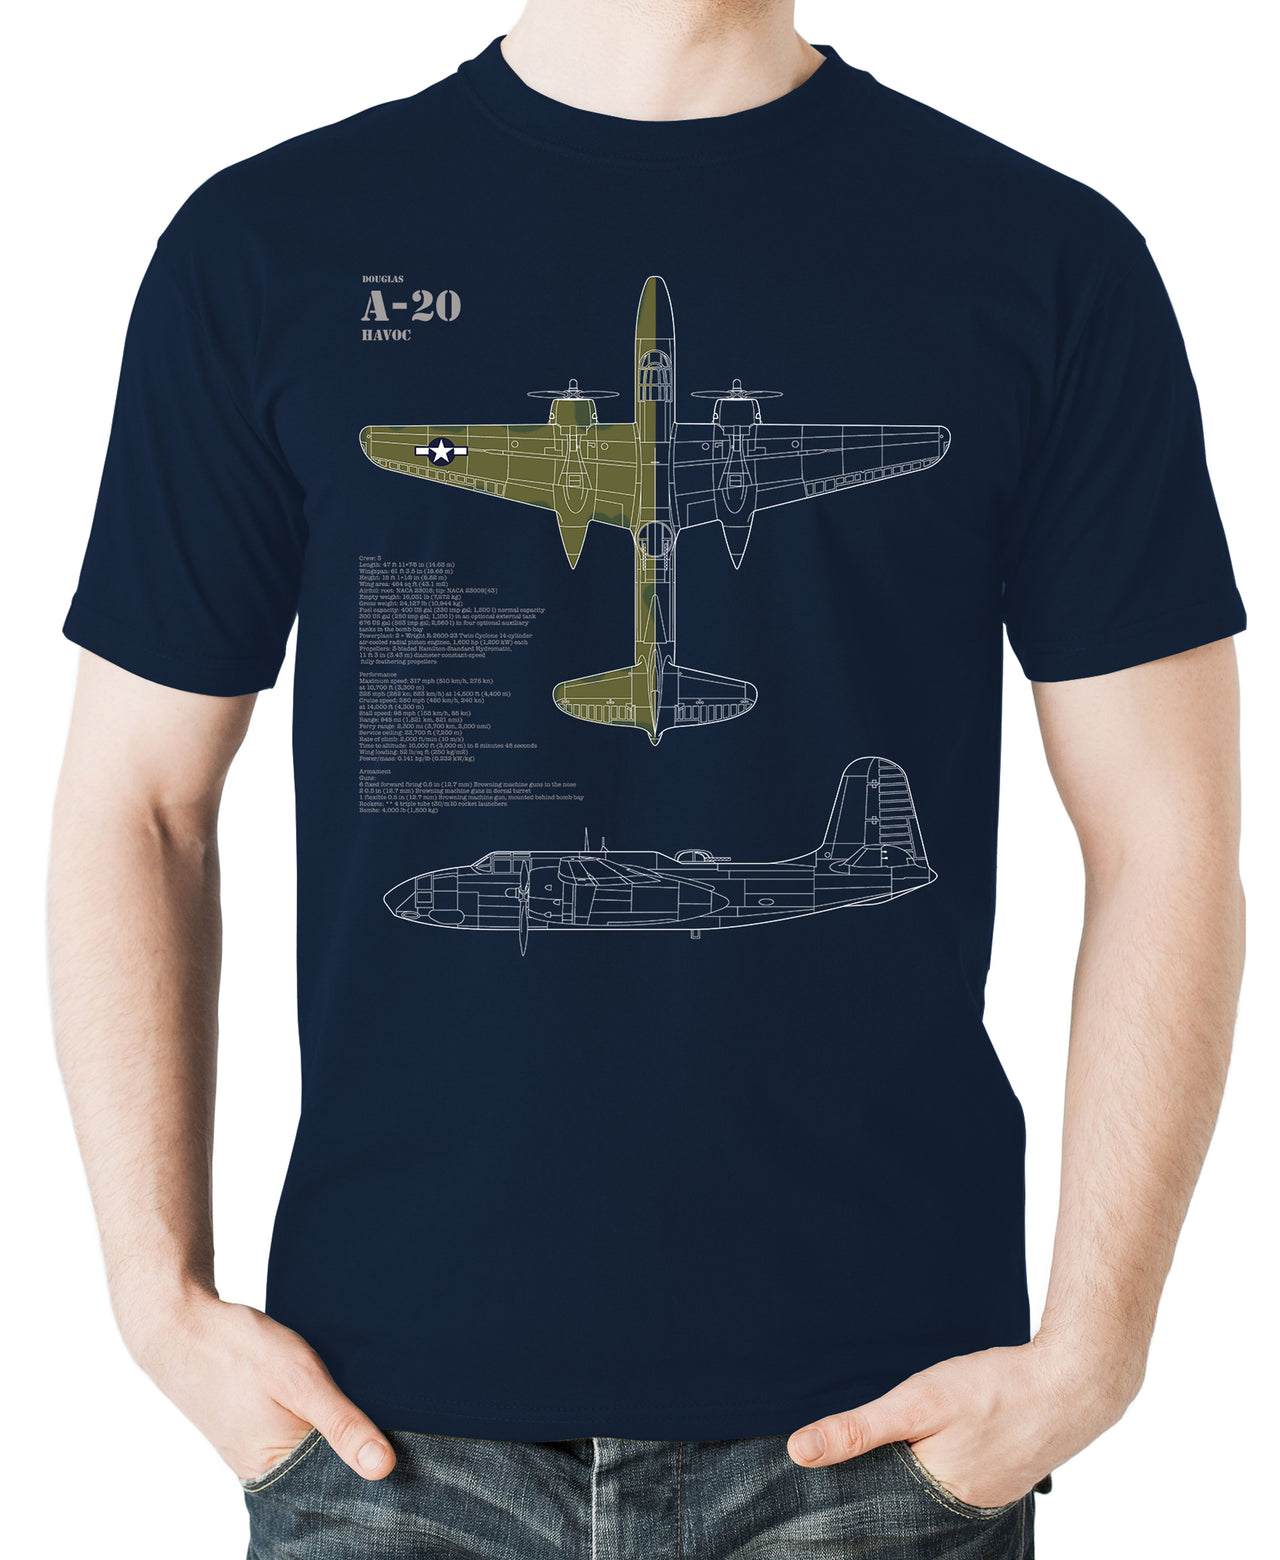 A-20 Havoc -T-shirt